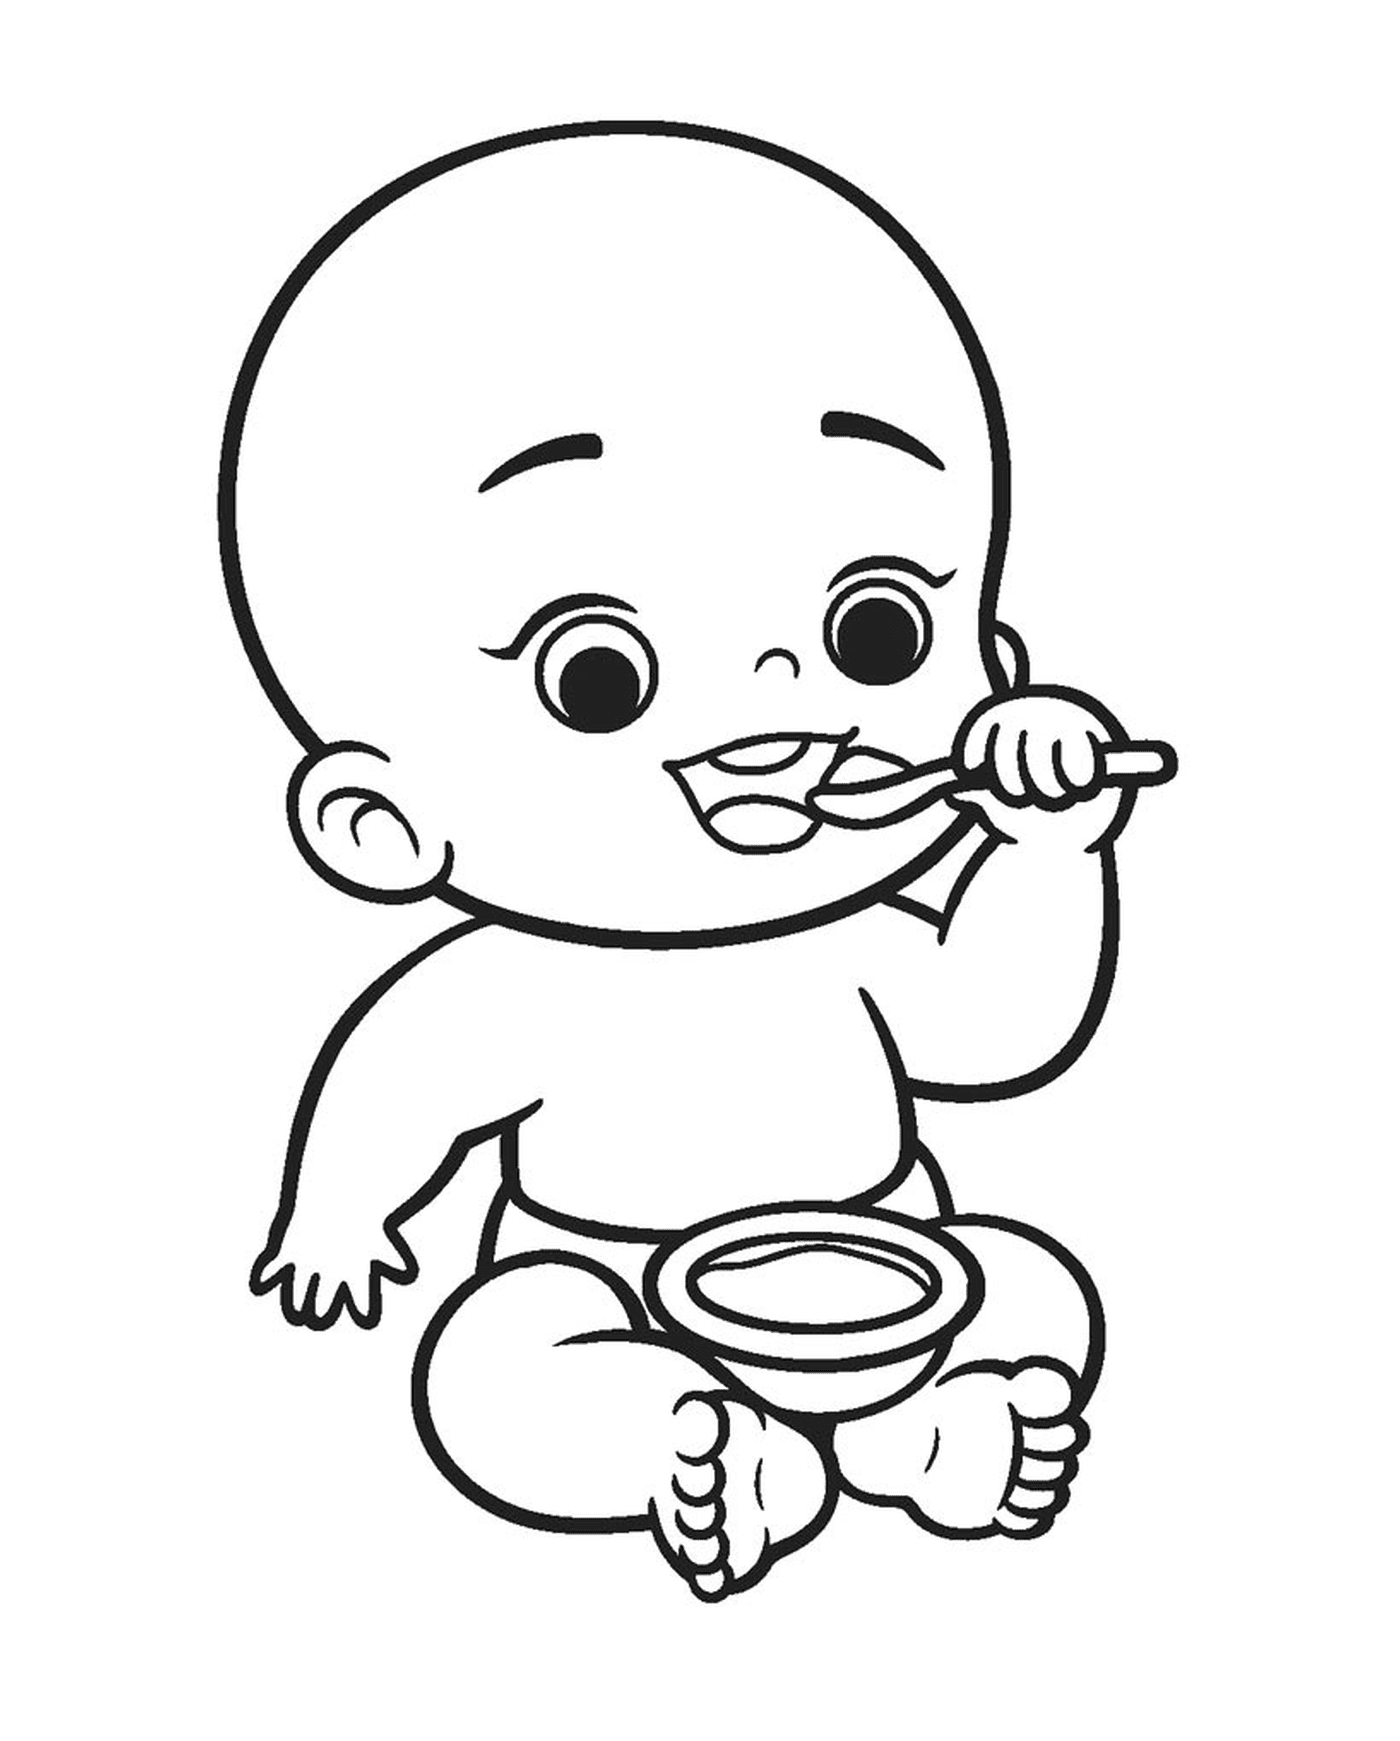  एक बच्चा सूप खा रहा है 